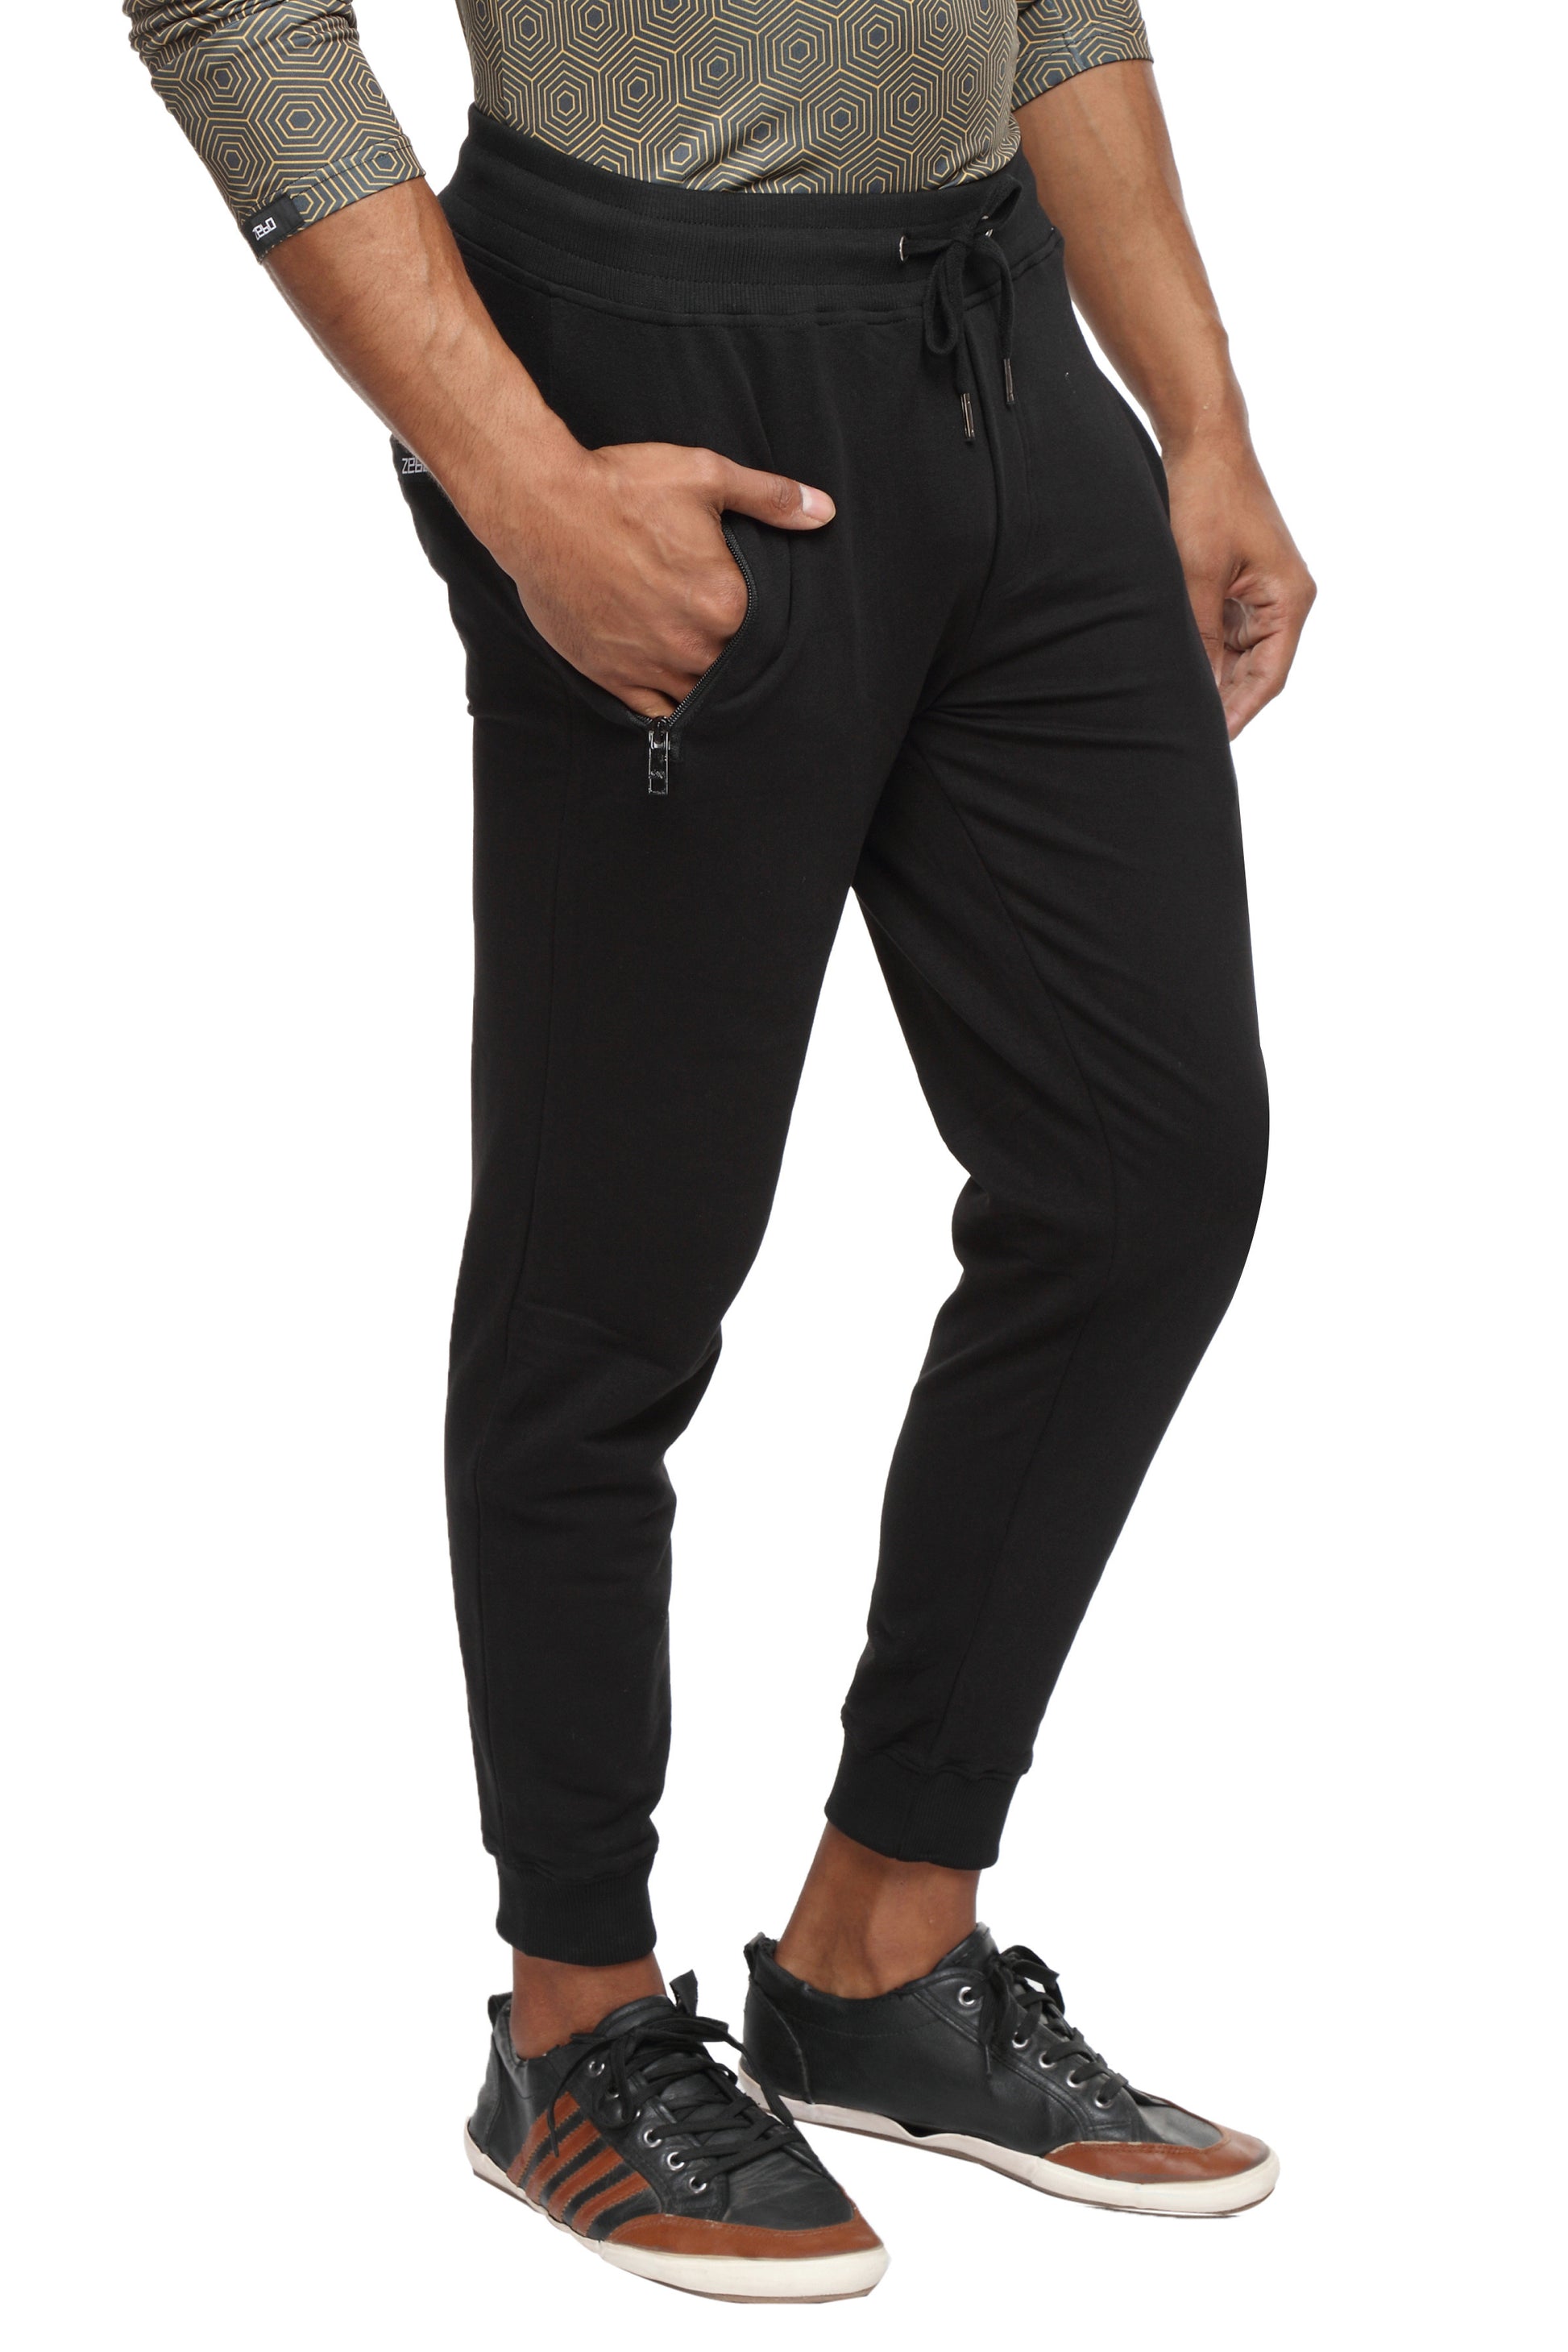 Slim fit cotton Joggers- Black - Zebo Active Wear